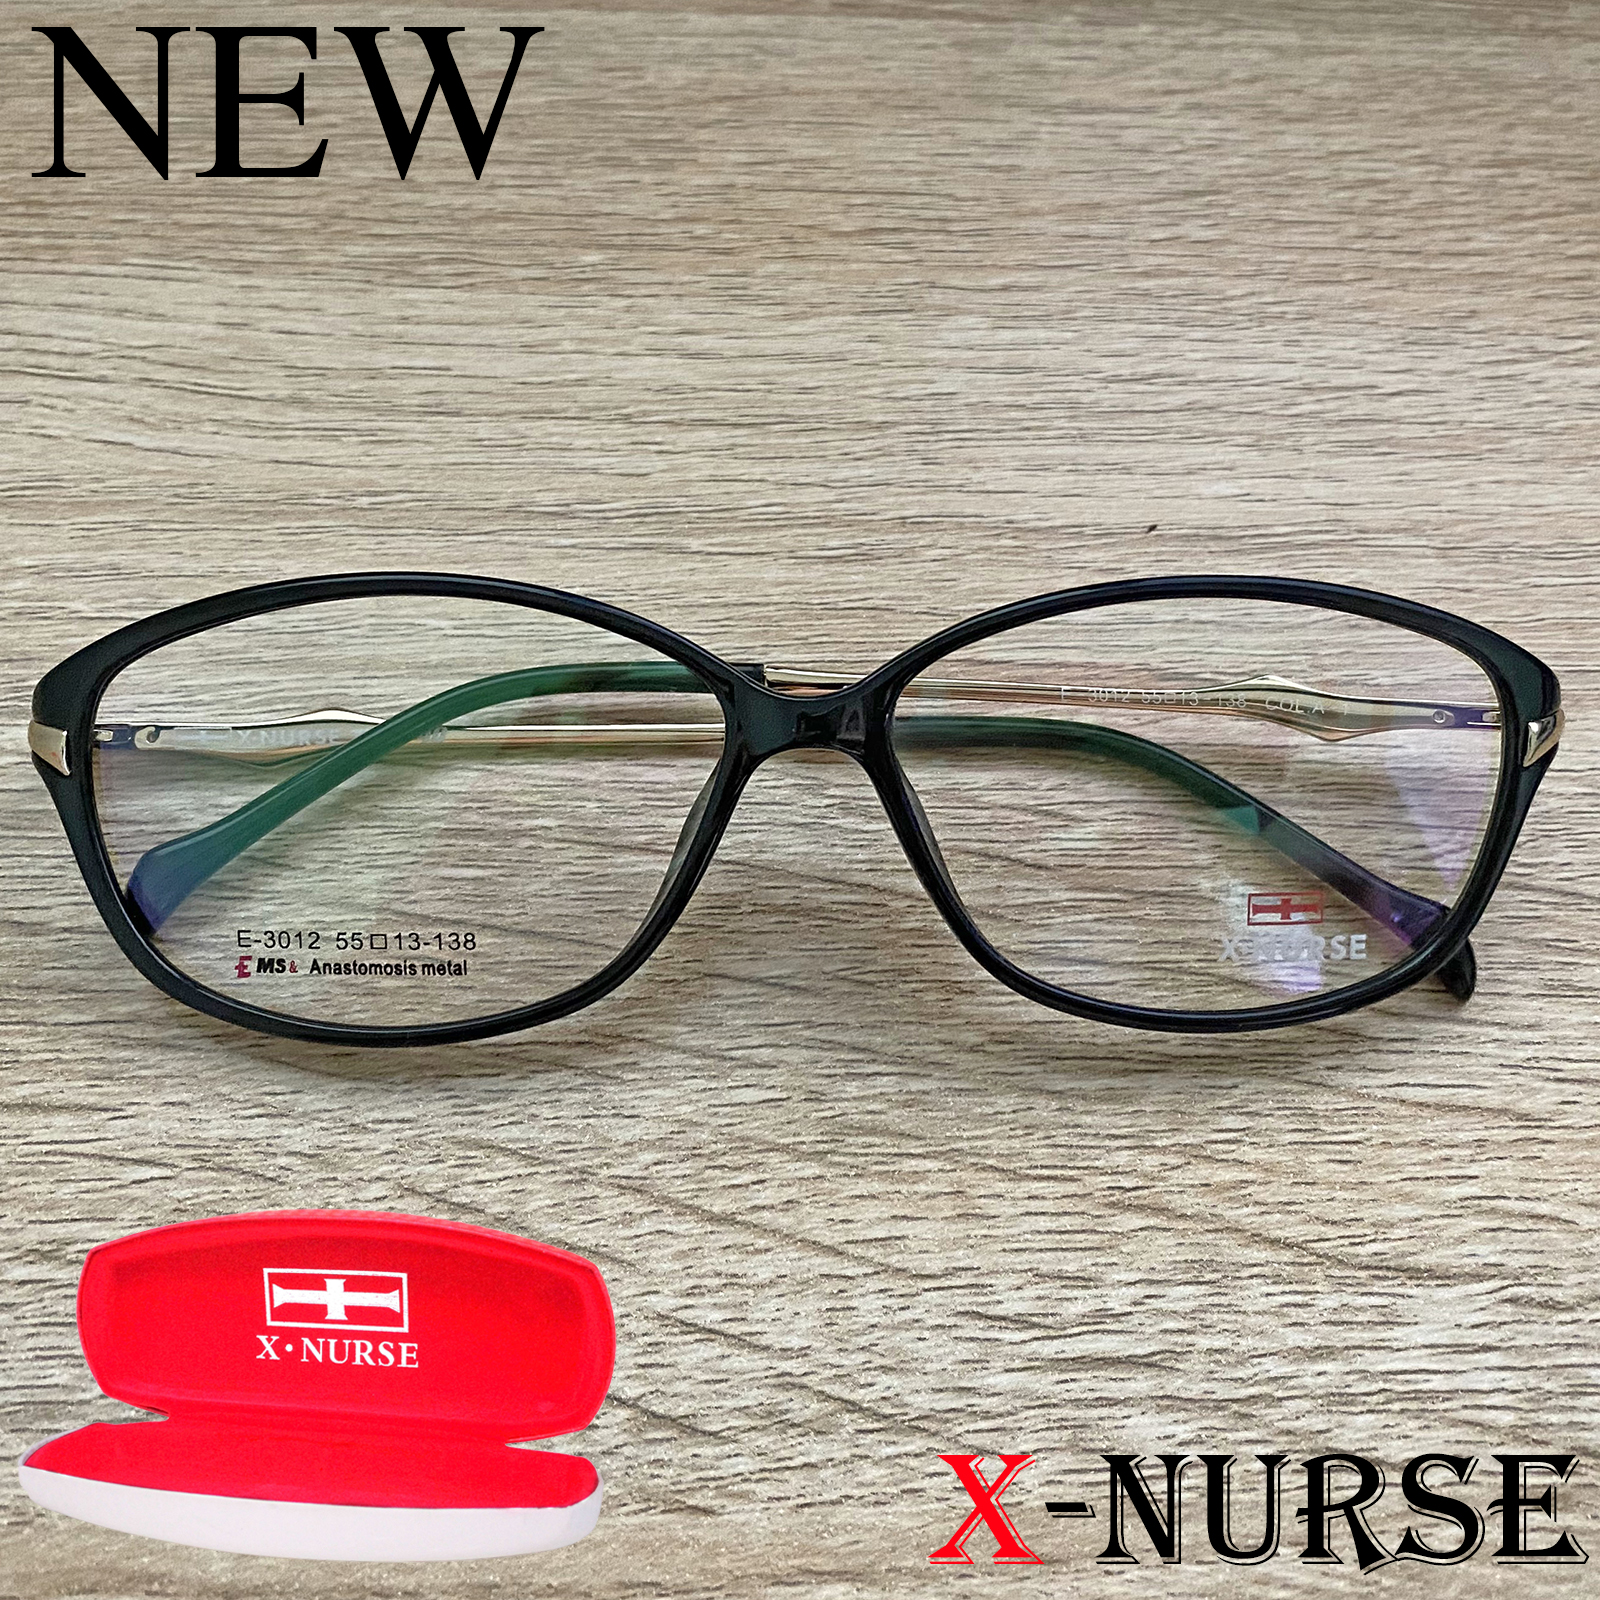 กรอบแว่นตา แว่นตาสำหรับตัดเลนส์ ผู้ชาย ผู้หญิง Fashion รุ่น X-NURSE 3012 สีดำ ทรงรี ขาสปริง วัสดุ พลาสติก พีซี เกรด เอ รับตัดเลนส์สายตาเลนส์กันแดดทุกชนิด